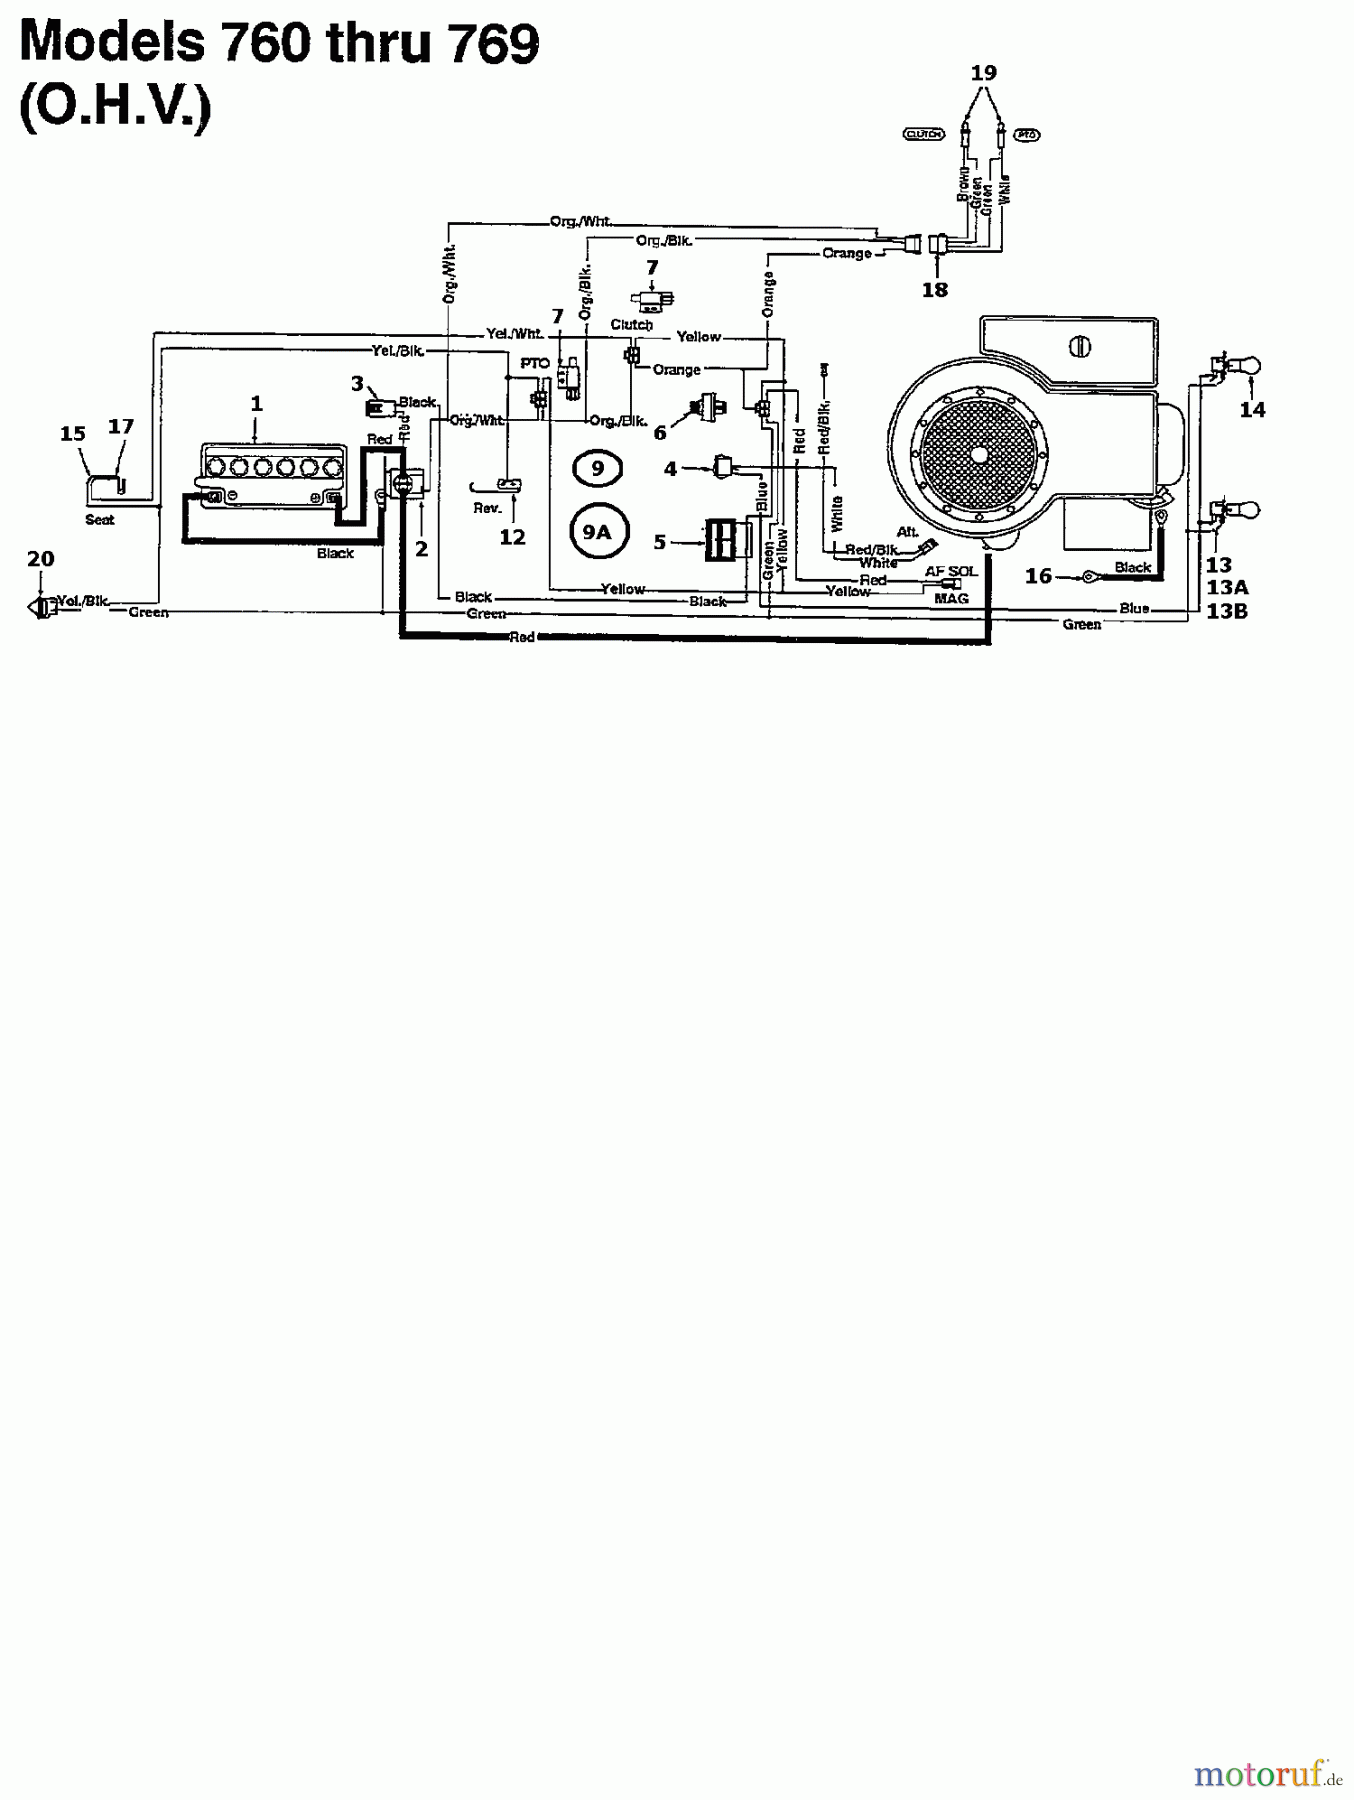  MTD Lawn tractors K 765 N 135N766N678  (1995) Wiring diagram for O.H.V.